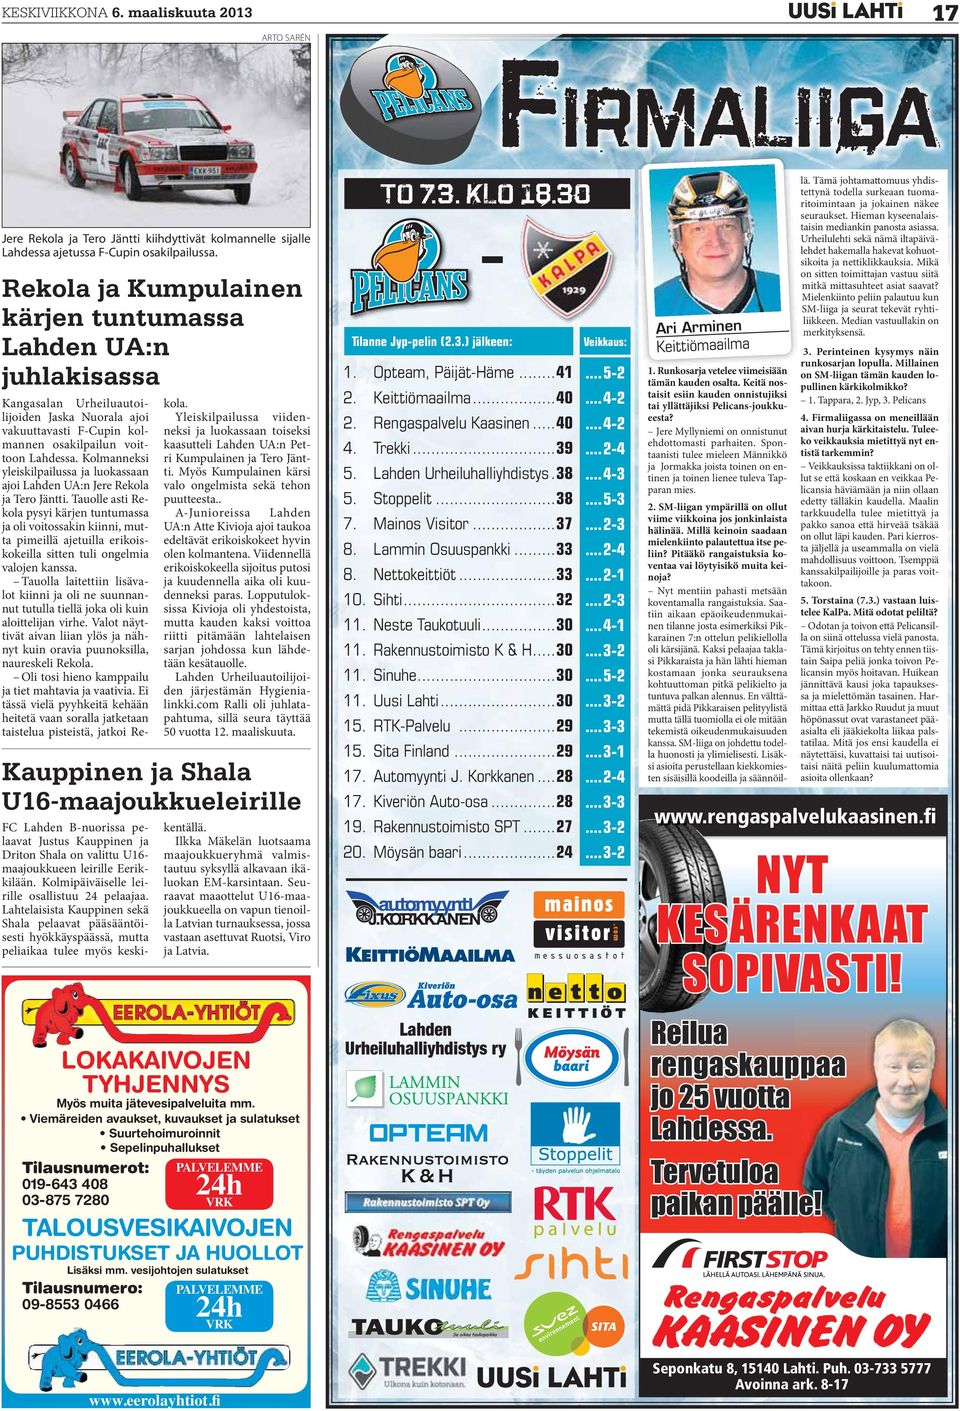 Tilausnumero: 09-8553 0466 Kangasalan Urheiluautoilijoiden Jaska Nuorala ajoi vakuuttavasti F-Cupin kolmannen osakilpailun voittoon Lahdessa.